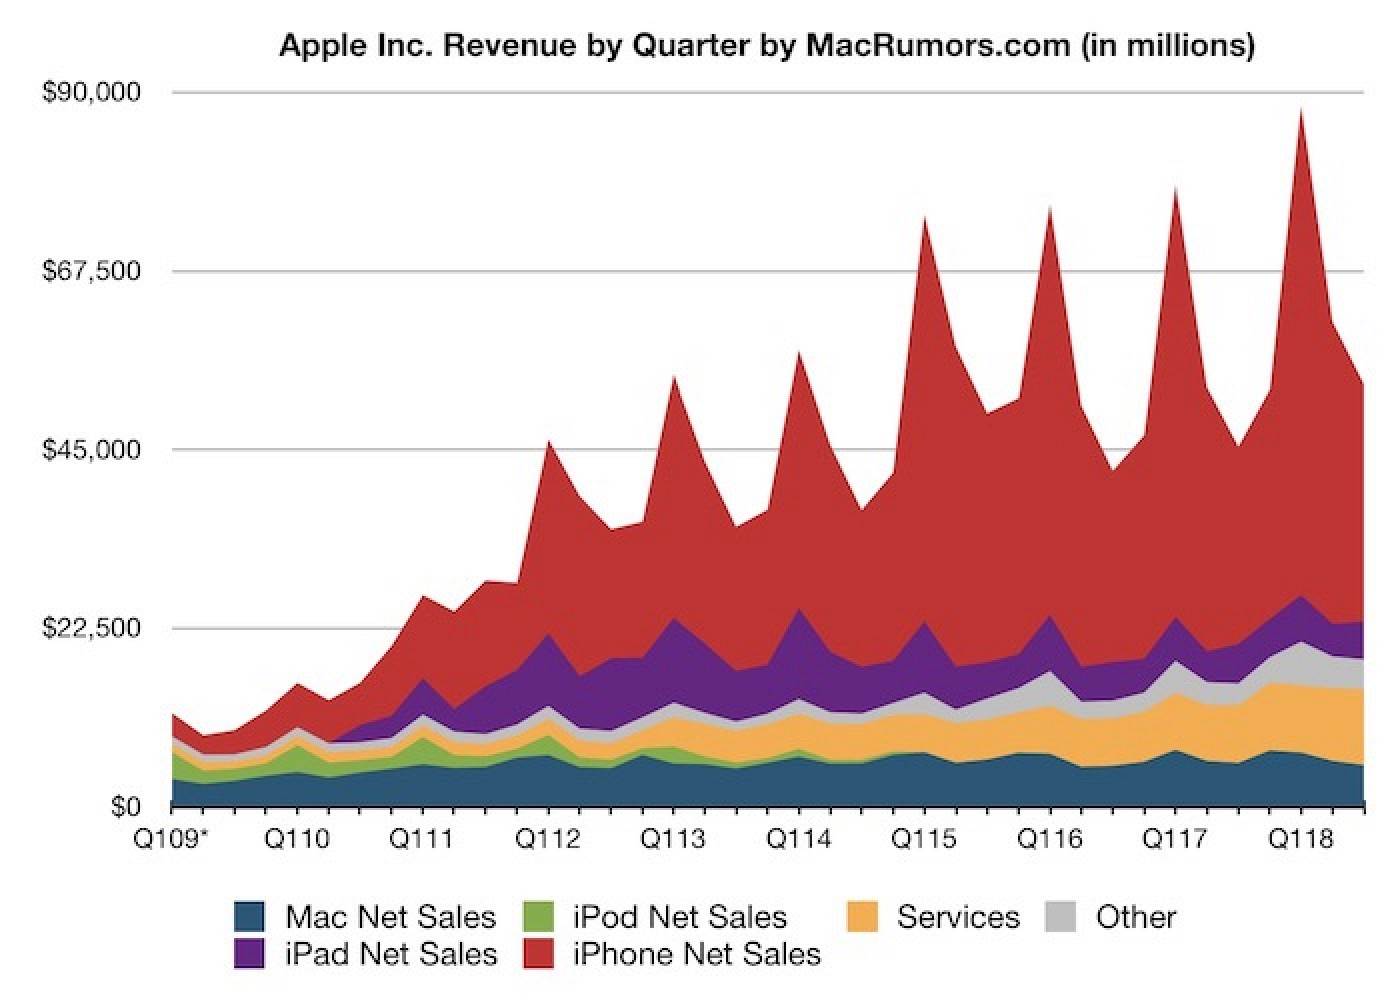 Apple ogłosiło wyniki finansowe za Q3 2018 ciekawostki wyniki finansowe, Mac, iPhone, iPad, Apple  Wczoraj w godzinach wieczornych Apple ogłosiło wyniki finansowe za Q3 2018 roku, czyli drugi kwartał kalendarzowego roku 2018. Wygląda to następująco. wynikiapple